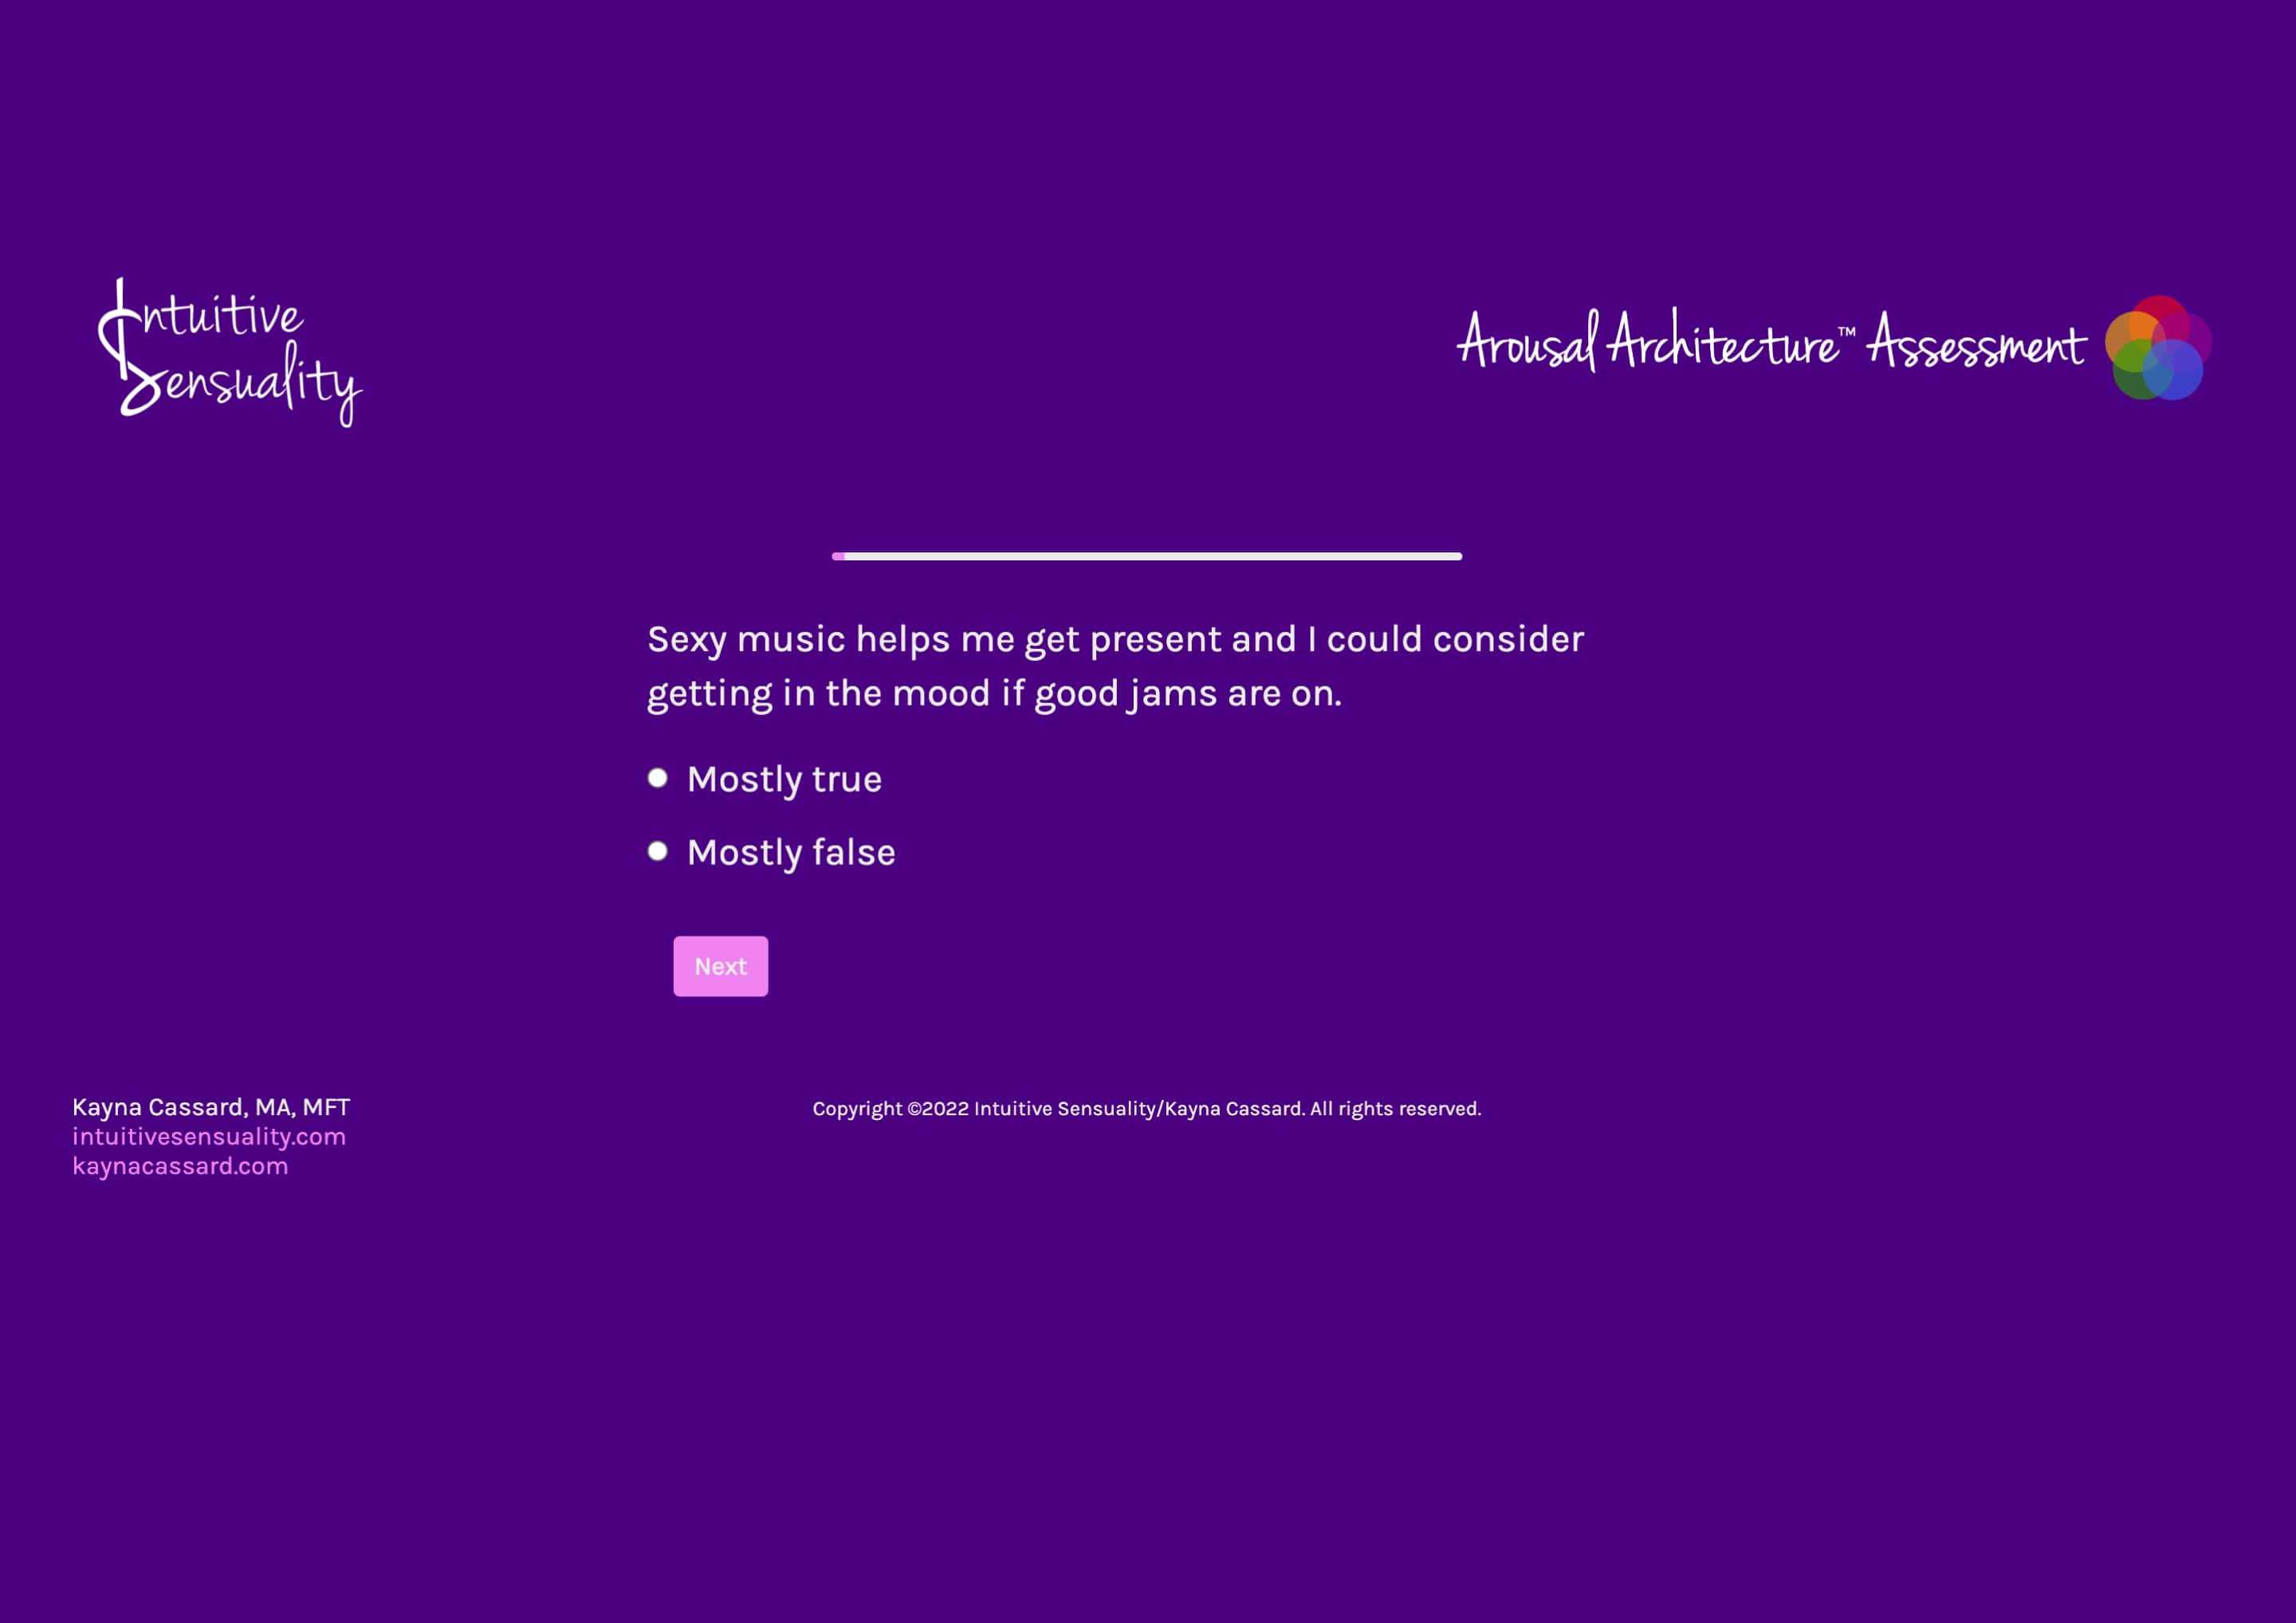 Arousal Architecture Assessment design screenshot